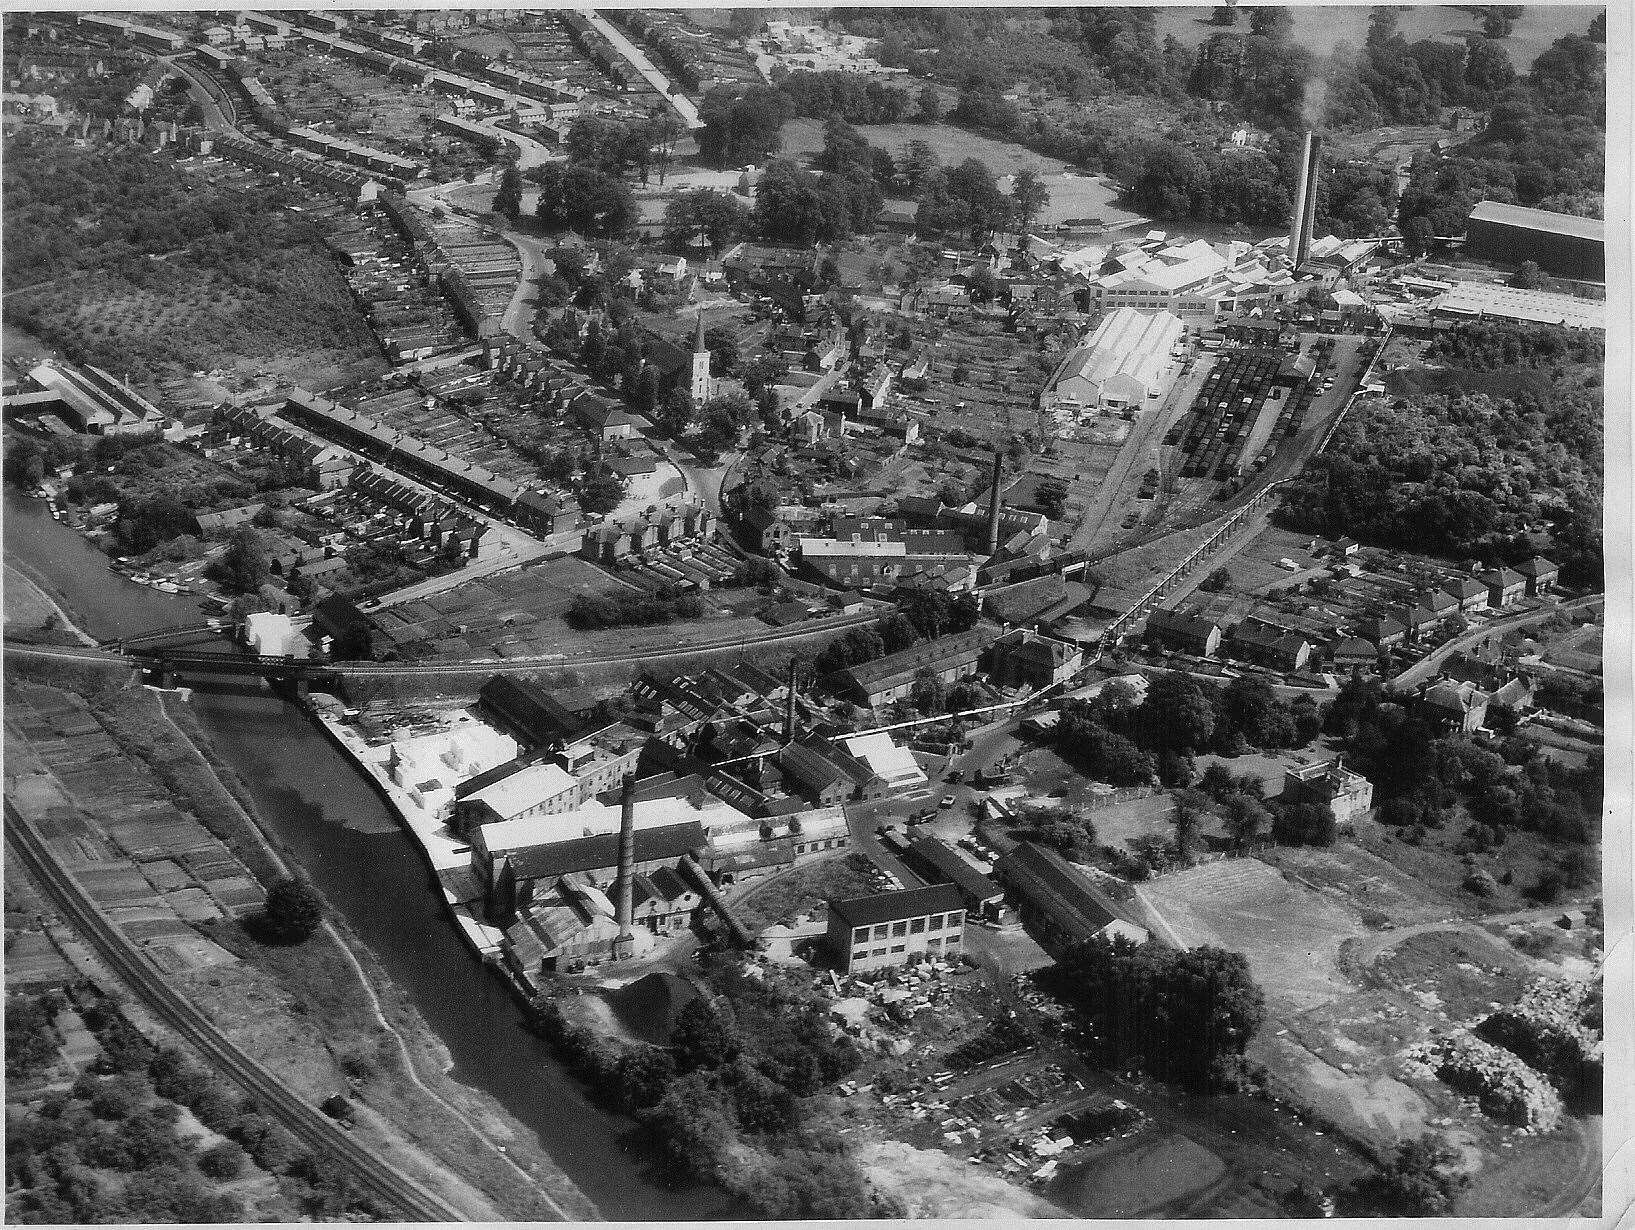 Tovil Goods Station in 1955